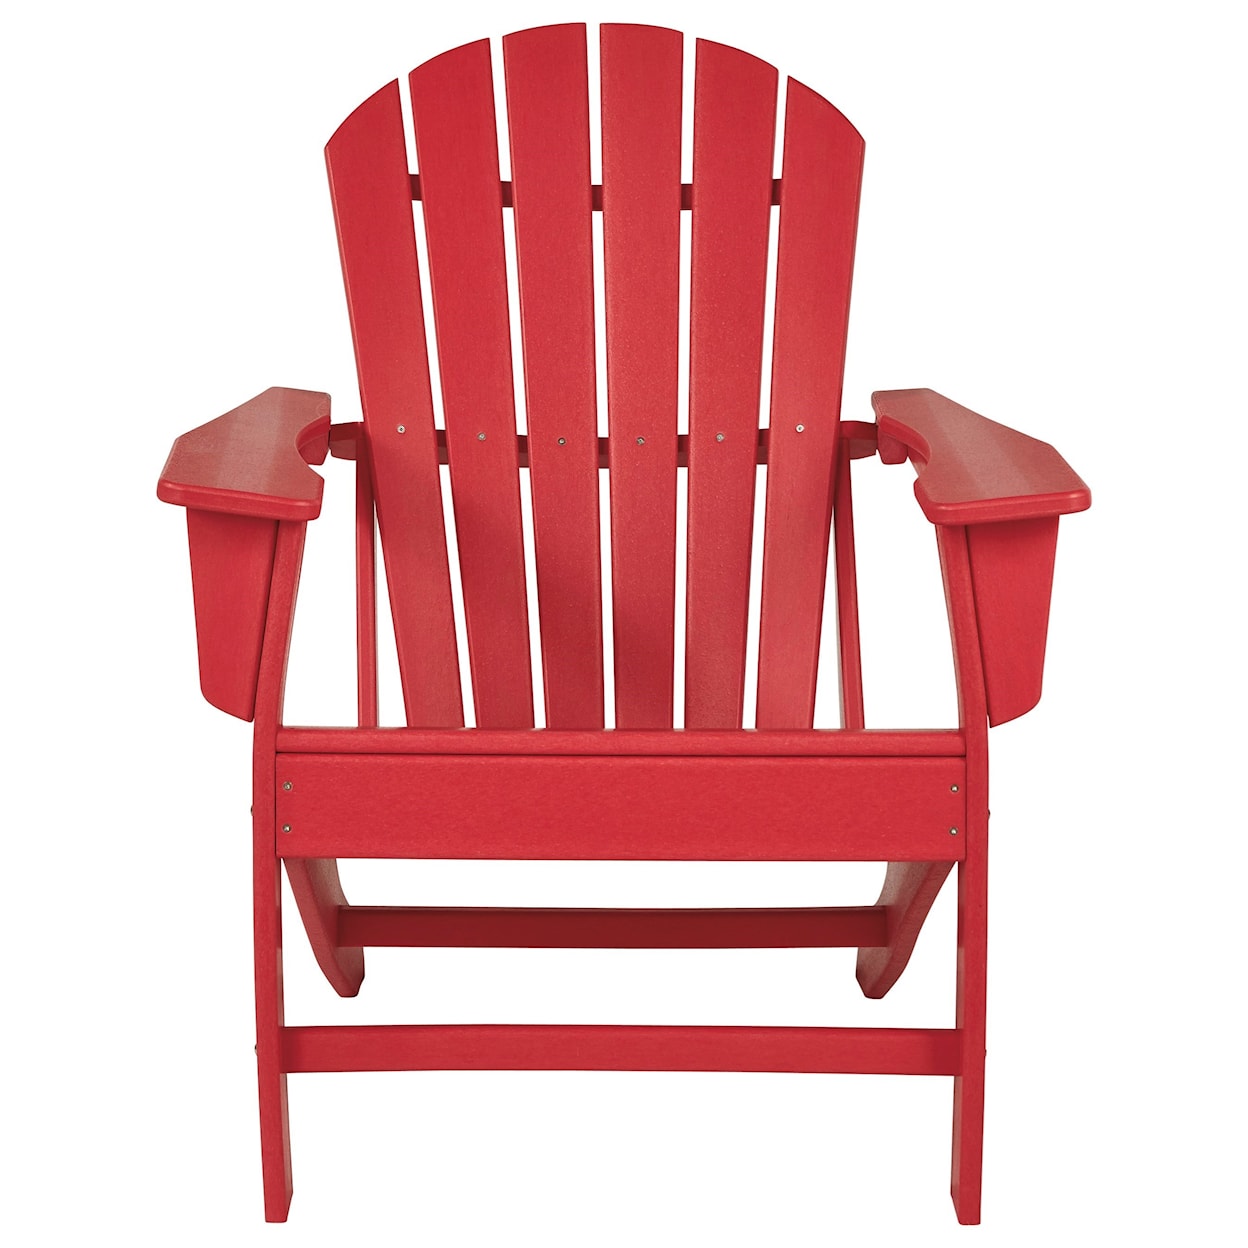 Benchcraft Sundown Treasure Adirondack Chair